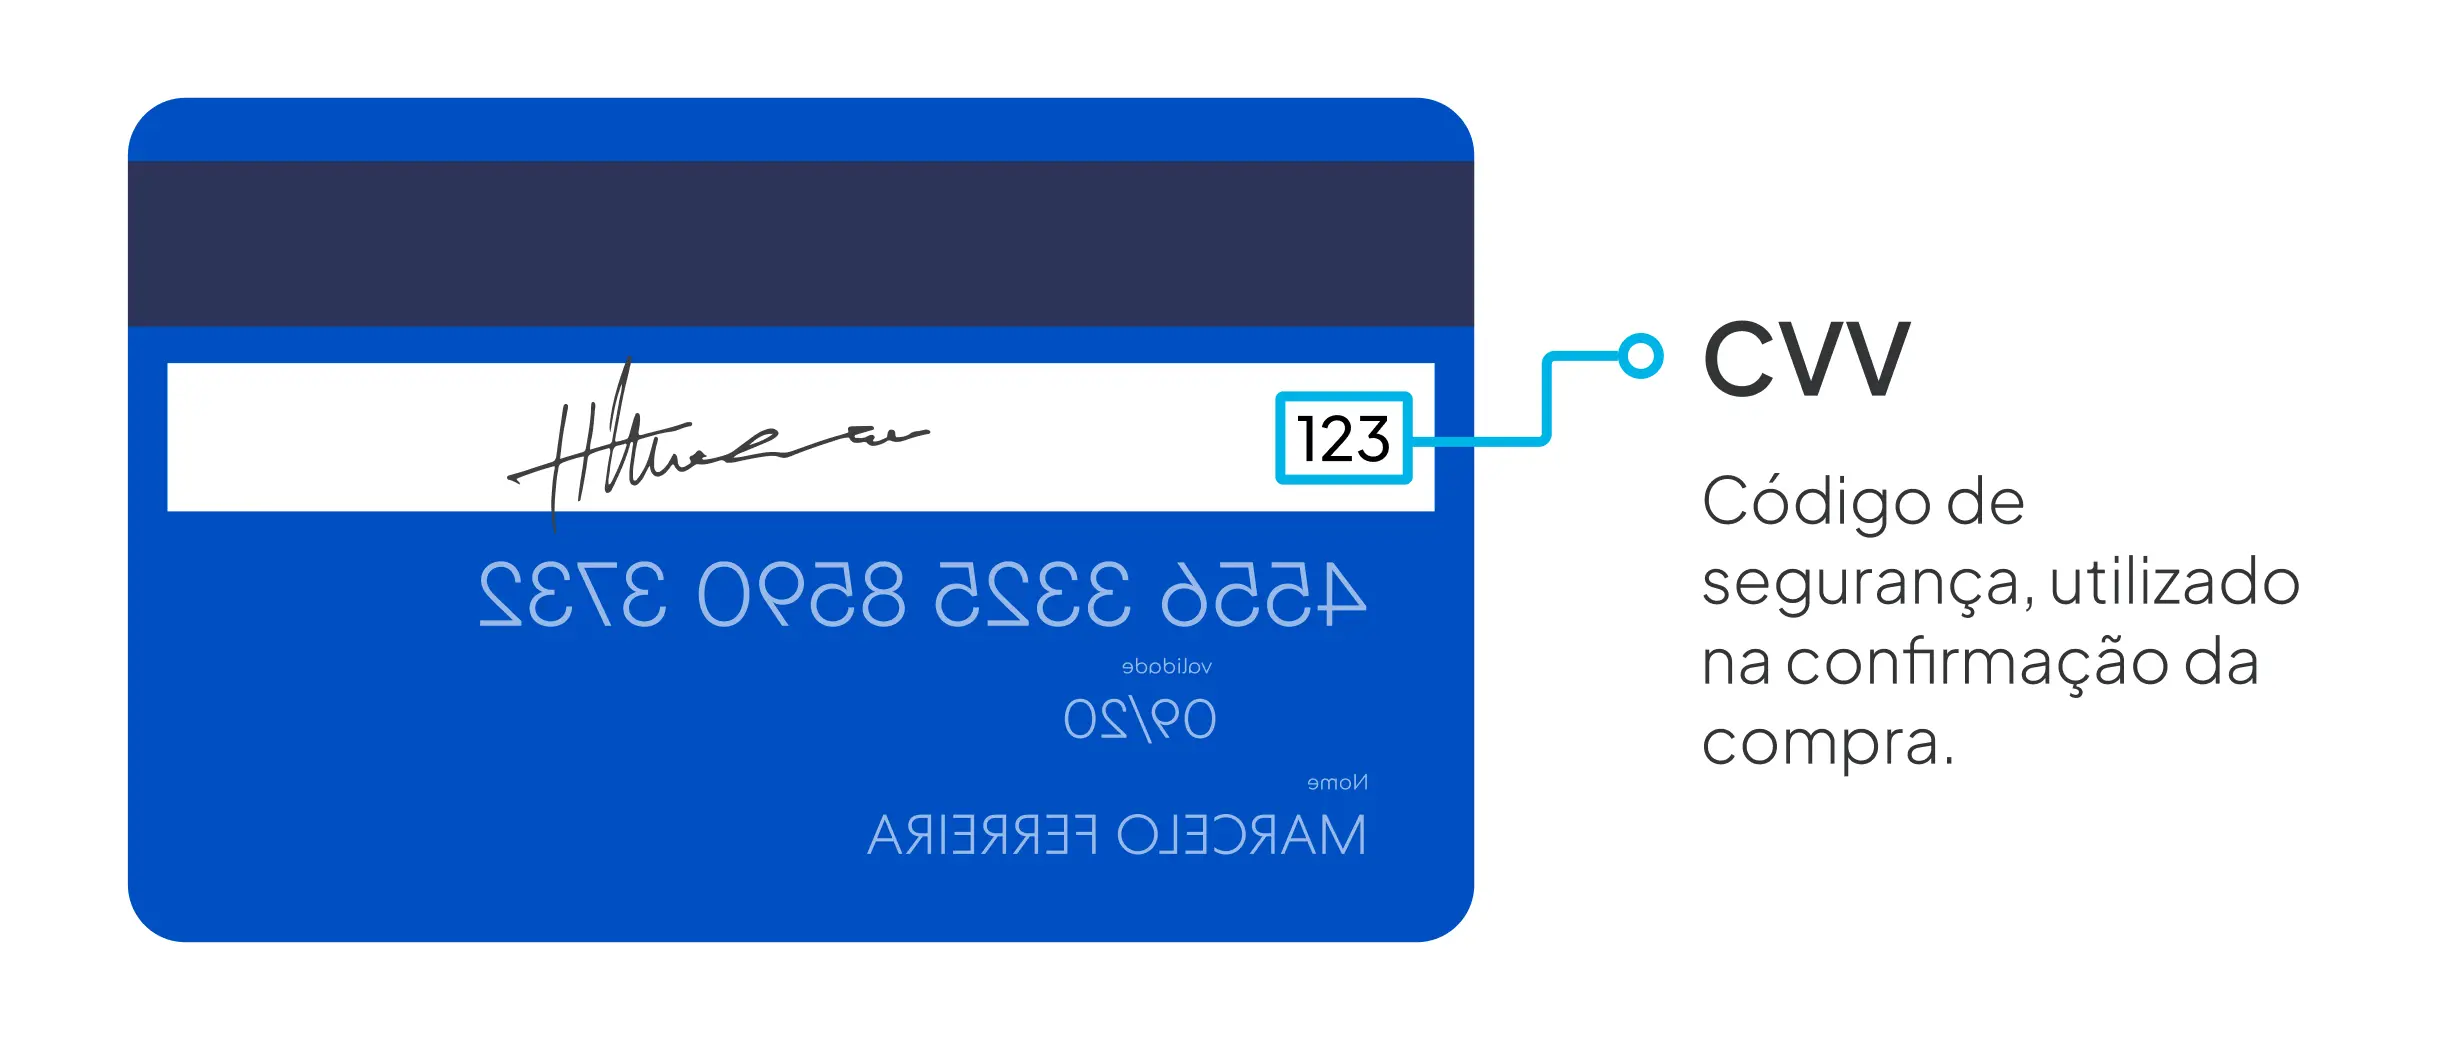 O Que Significa Cvv E Onde Fica No Cartão De Crédito 3613